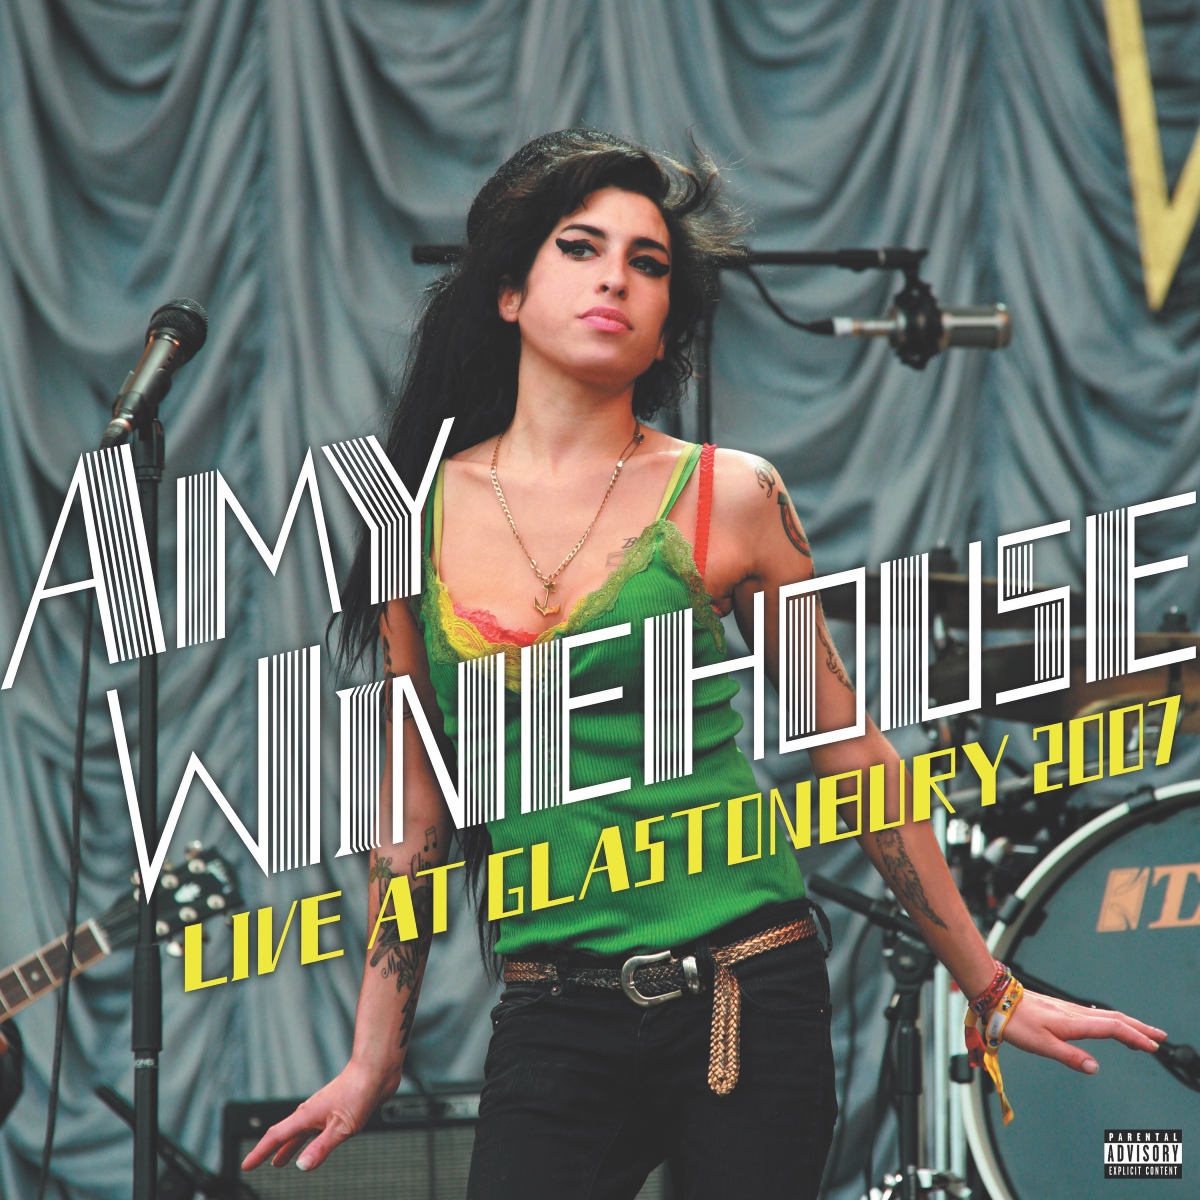 Amy Winehouse Glastonbury 2007 vinyl cover